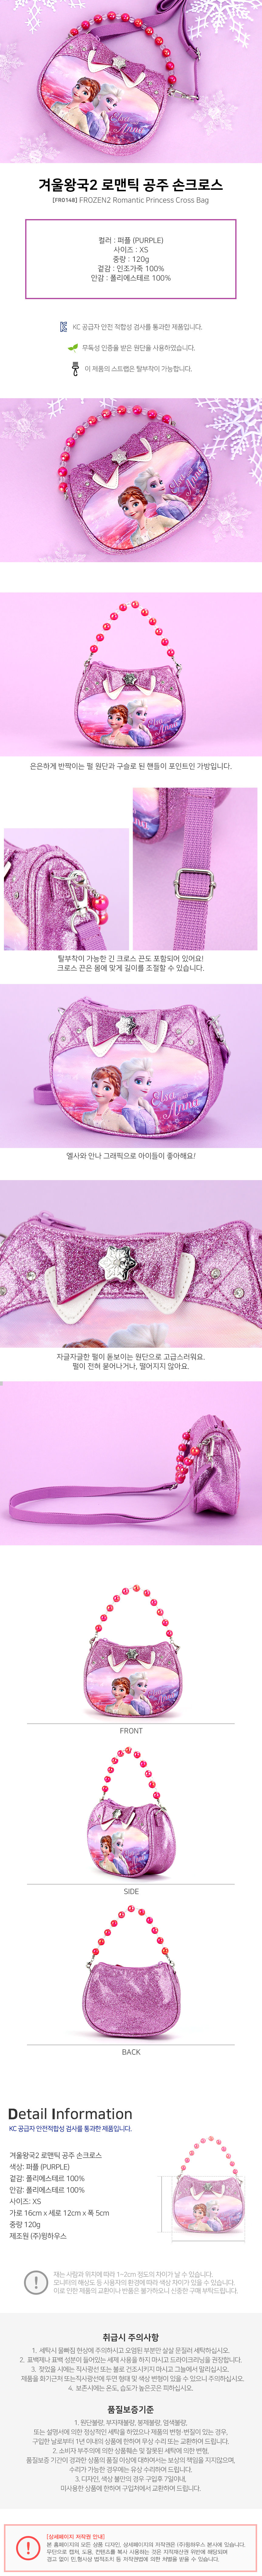 韓國winghouse冰雪奇緣手提/側肩包-FROZEN2-紫